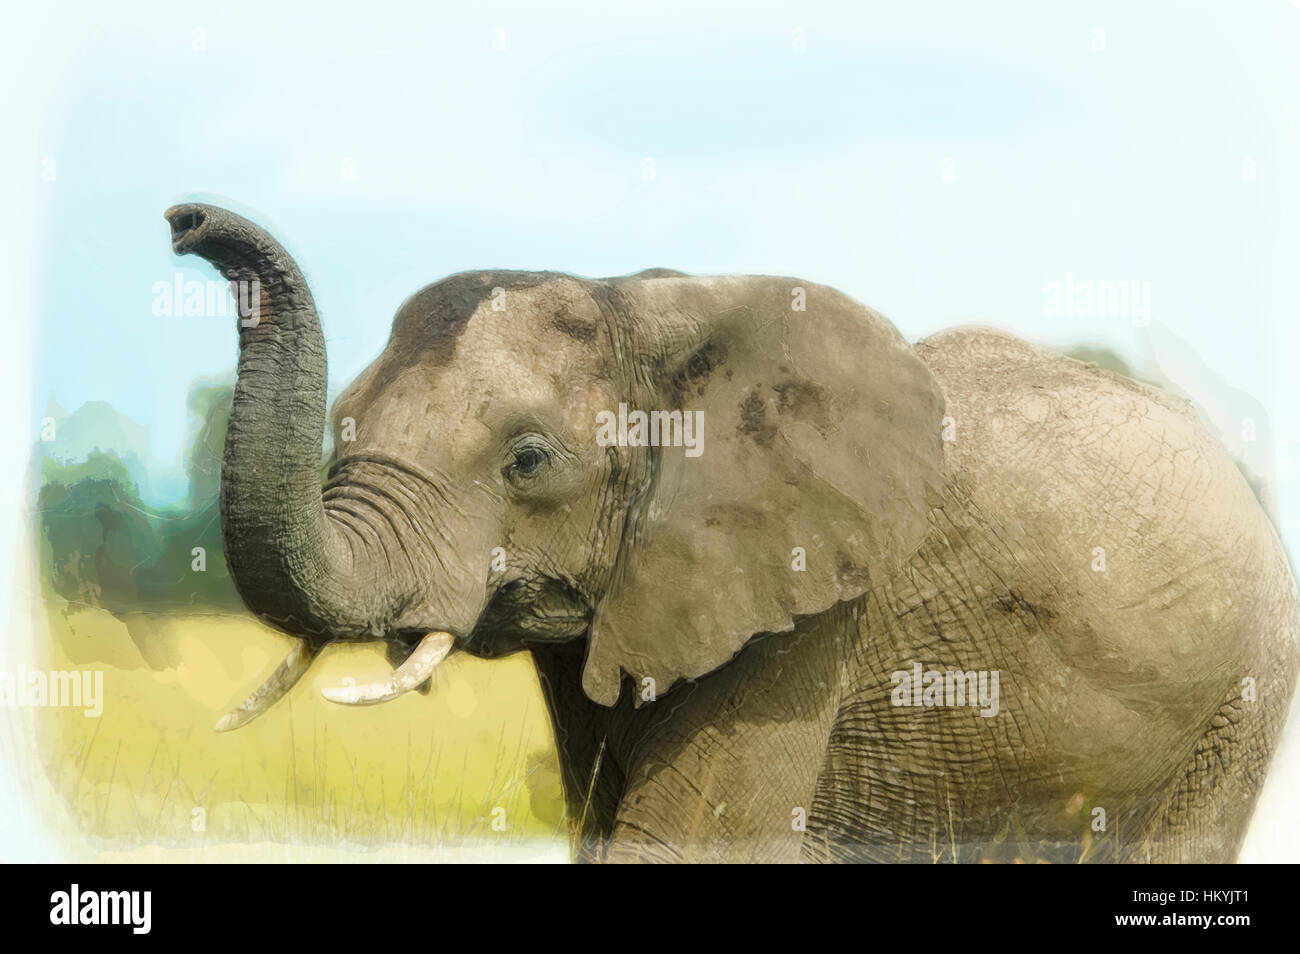 Digital Bild einer engen erweitert sich eines afrikanischen Elefanten mit erhöhten erhöhten Stamm. Fotografiert in Kenia, Masai Mara reserve Stockfoto